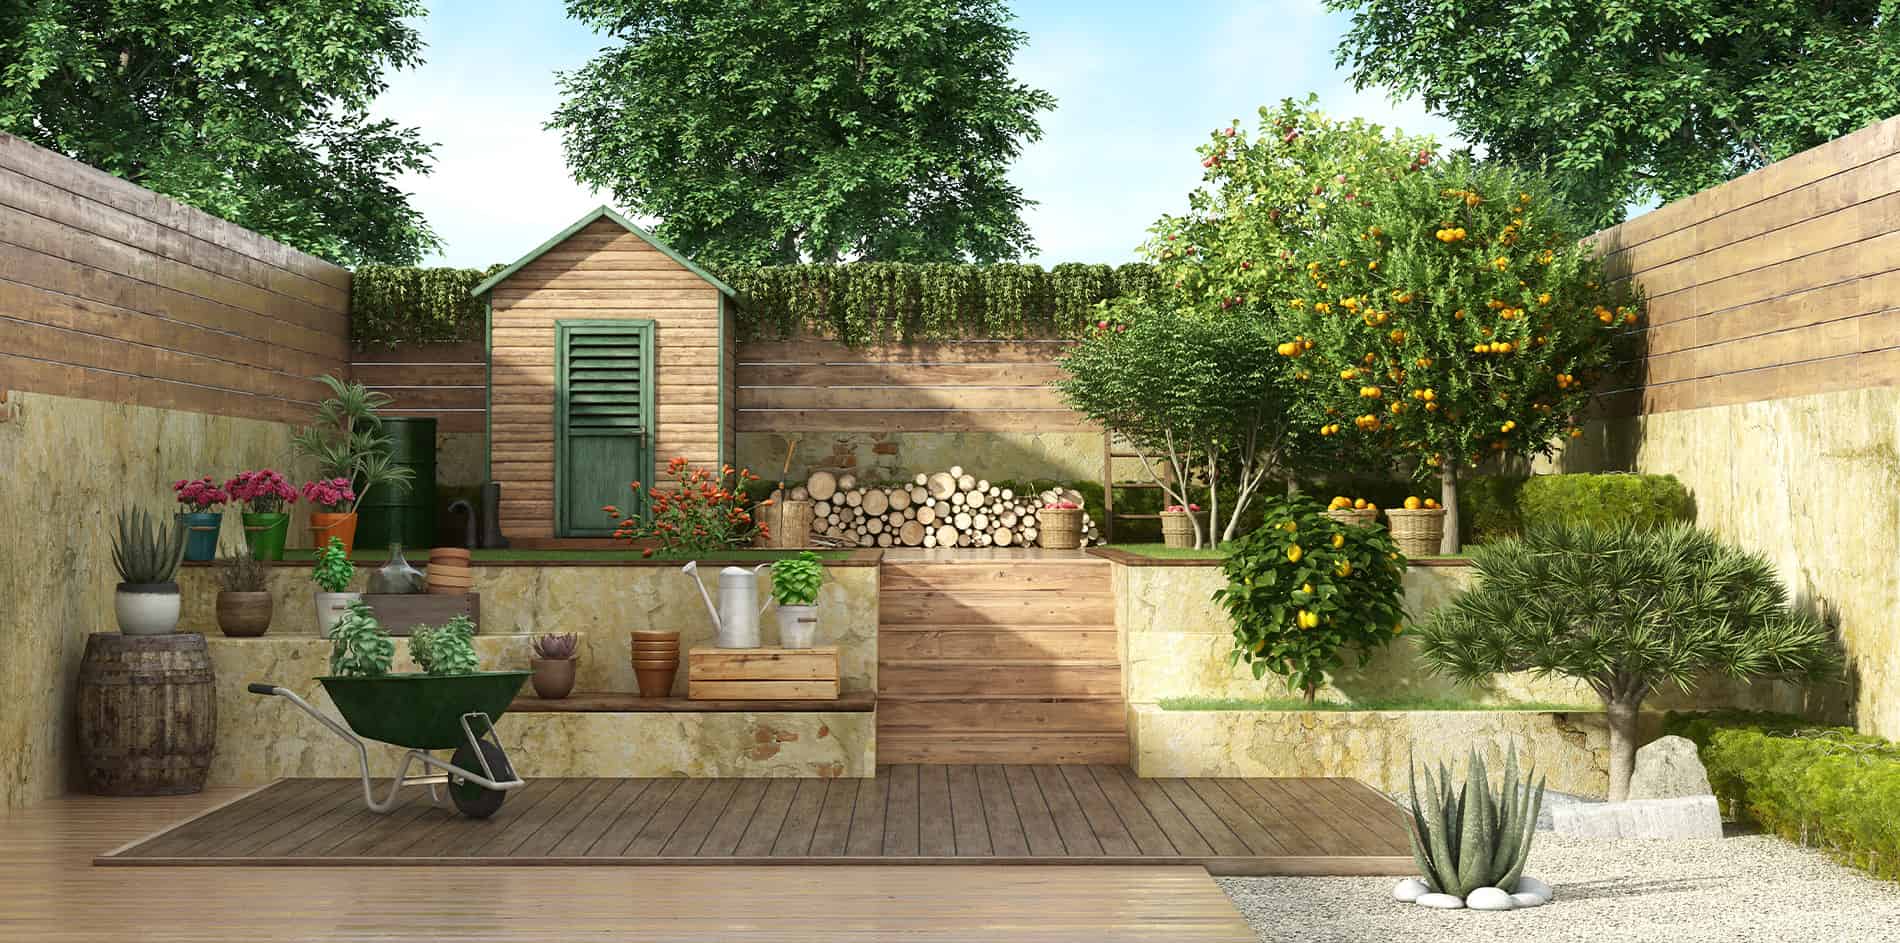 Wunderschön gestalteter Garten von BR Montage mit Gartenhäuschen, Obstbäumen und einer Schubkarre auf Holzboden